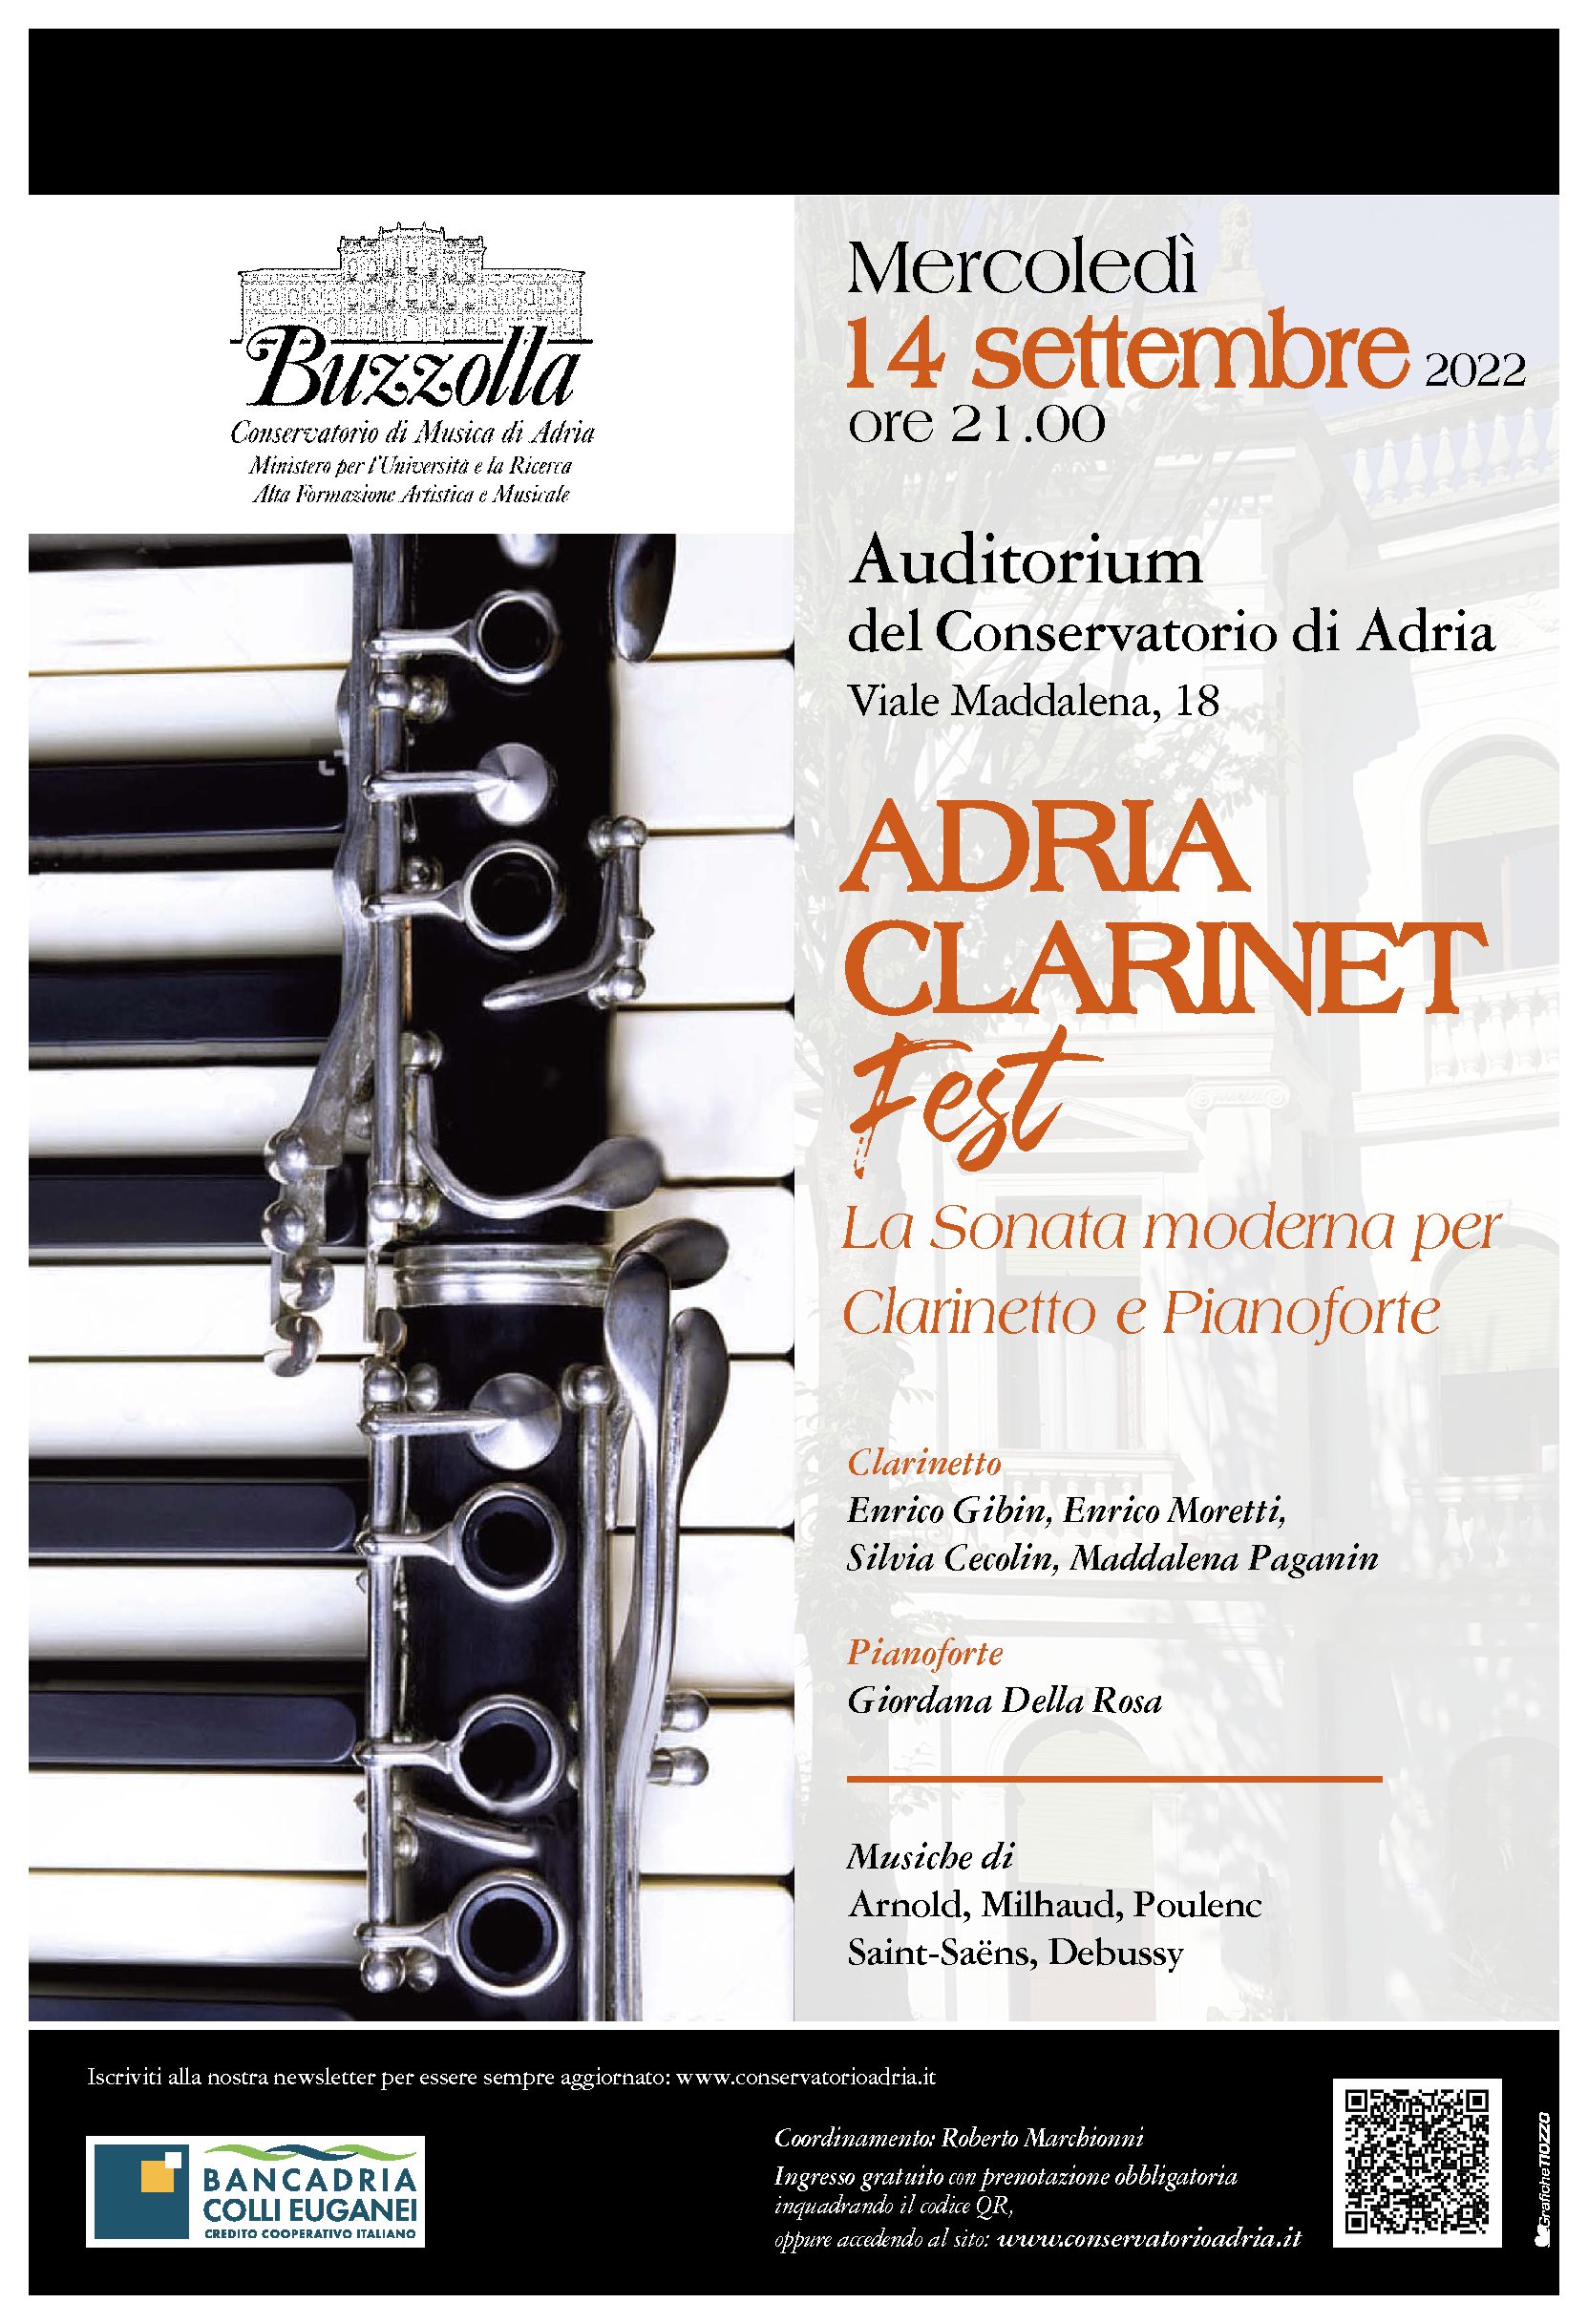 14 settembre 2022, La Sonata moderna per Clarinetto e Pianoforte